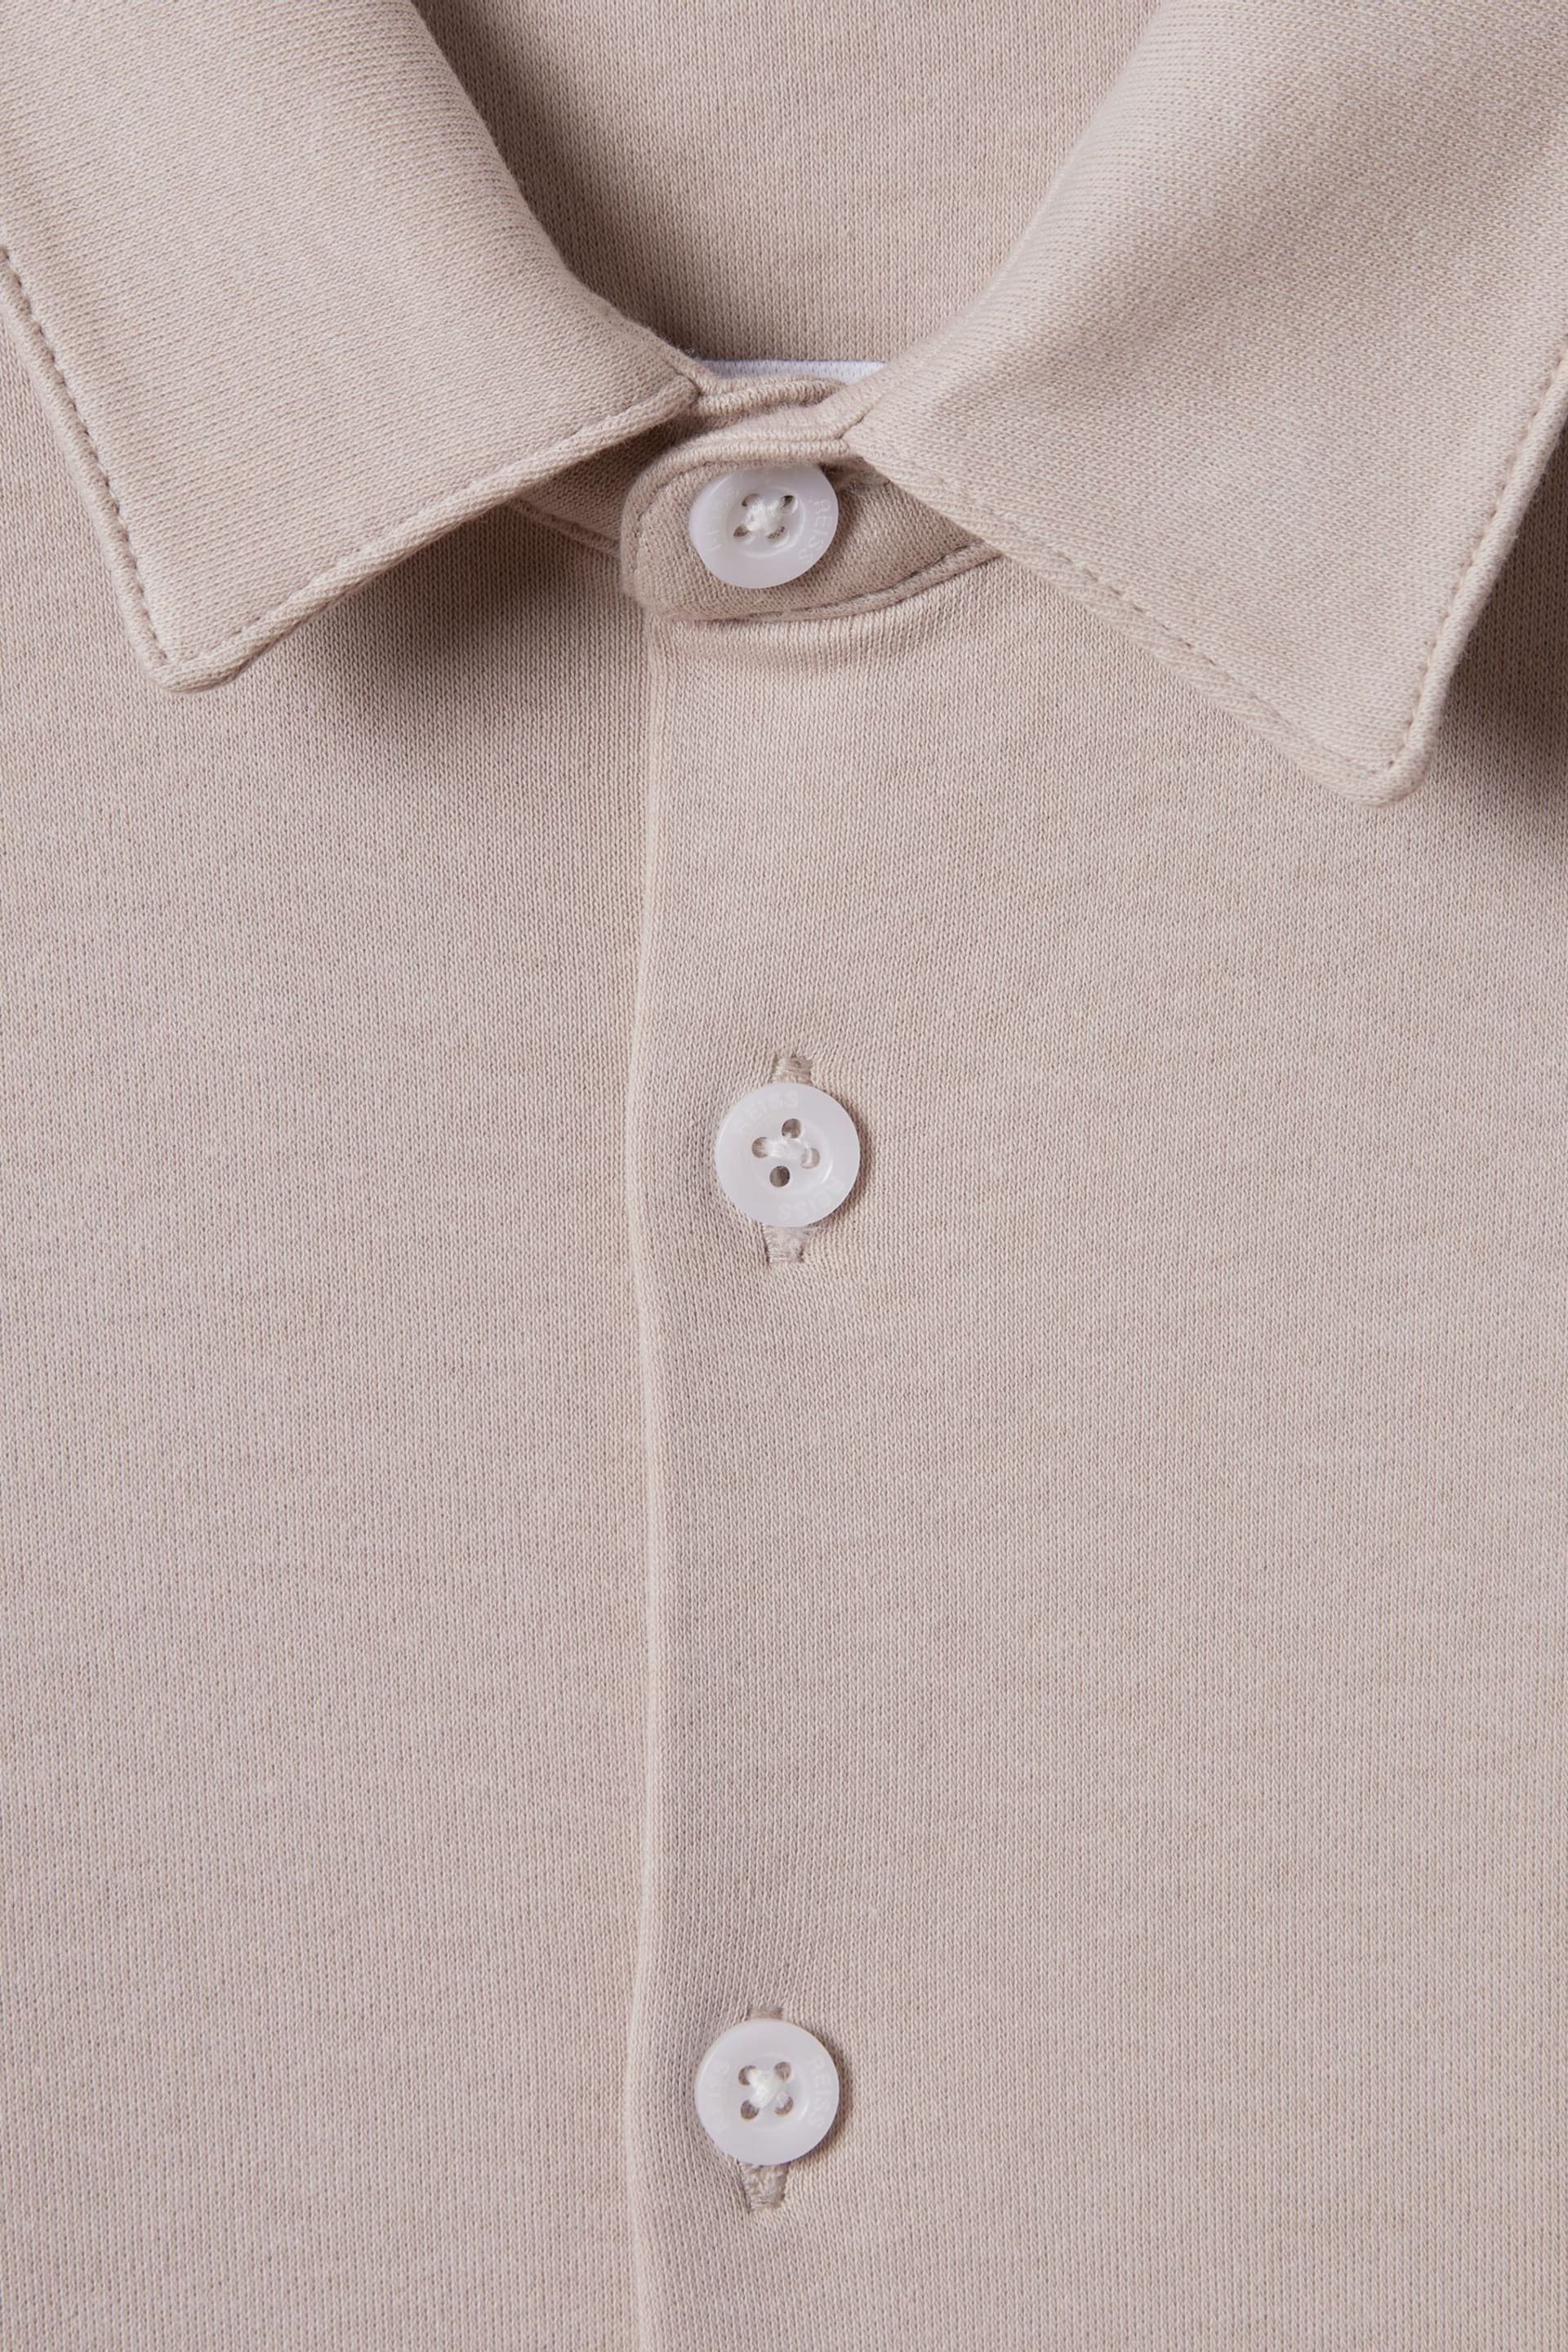 Reiss Stone Hendon Teen Cotton Button-Through Shirt - Image 6 of 6